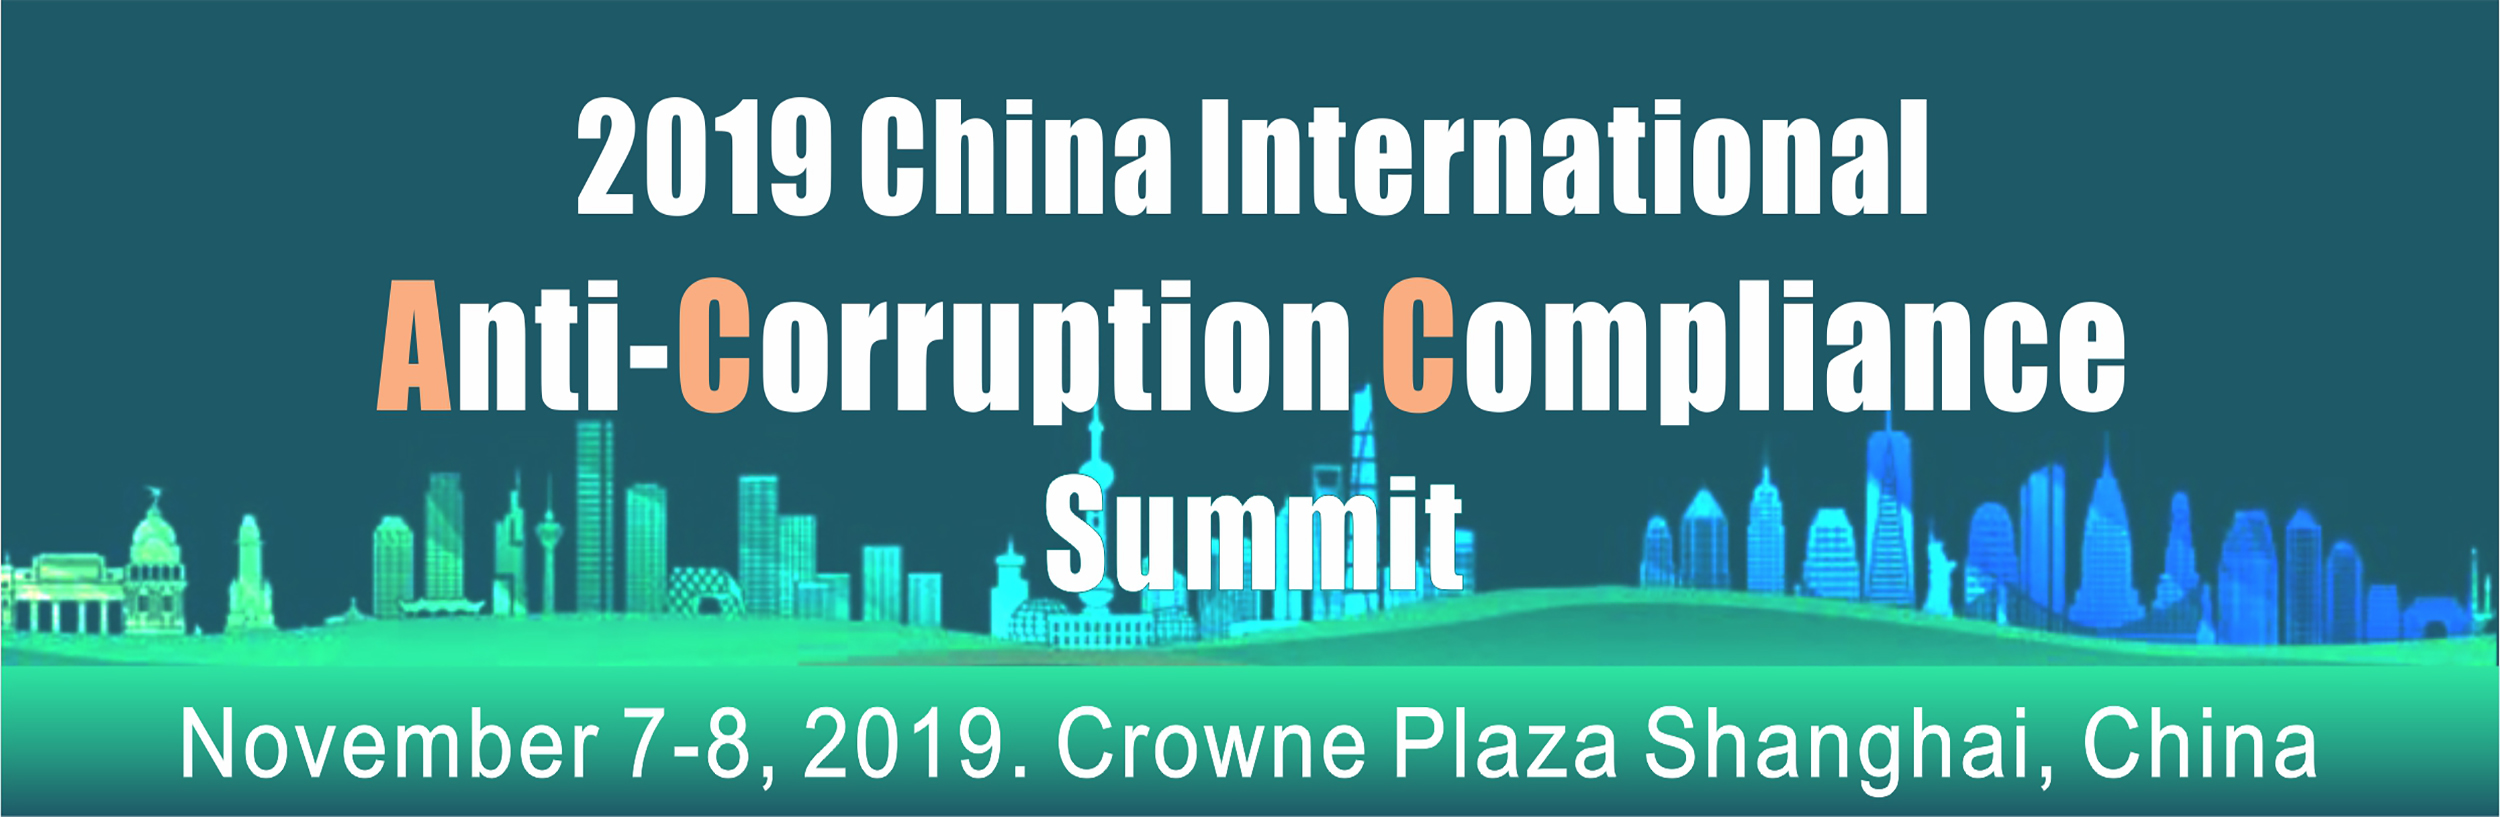 2019 China International Anti-Corruption Compliance Summit 